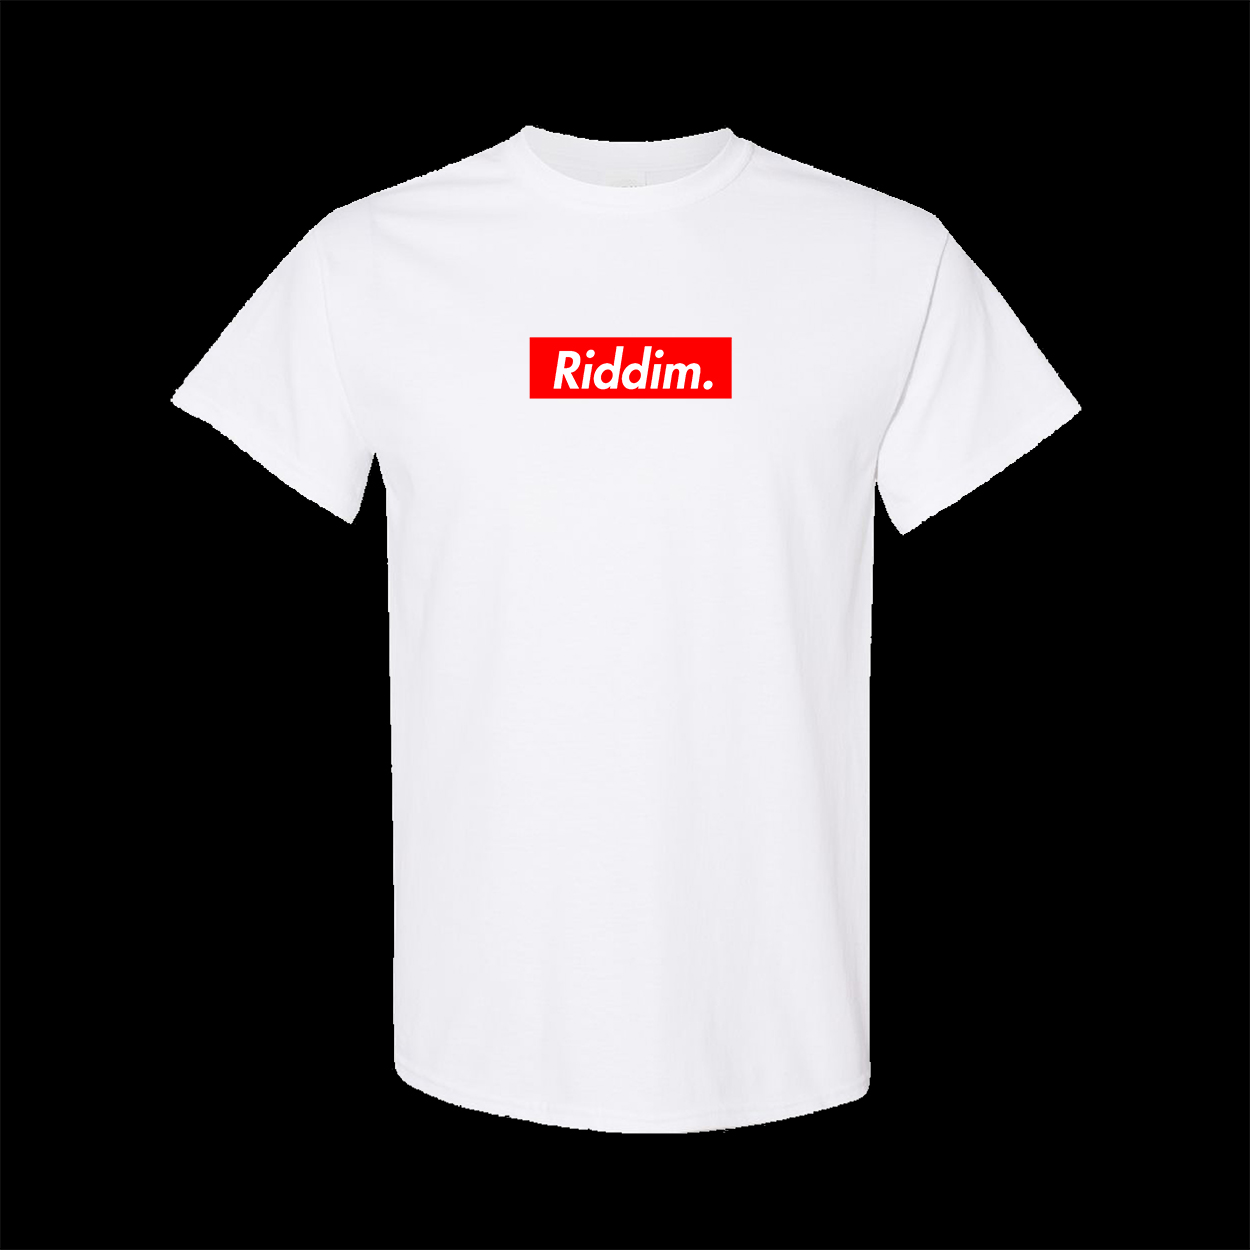 https://topbananausa.com/wp-content/uploads/2022/11/Riddim-White-shirt.jpg